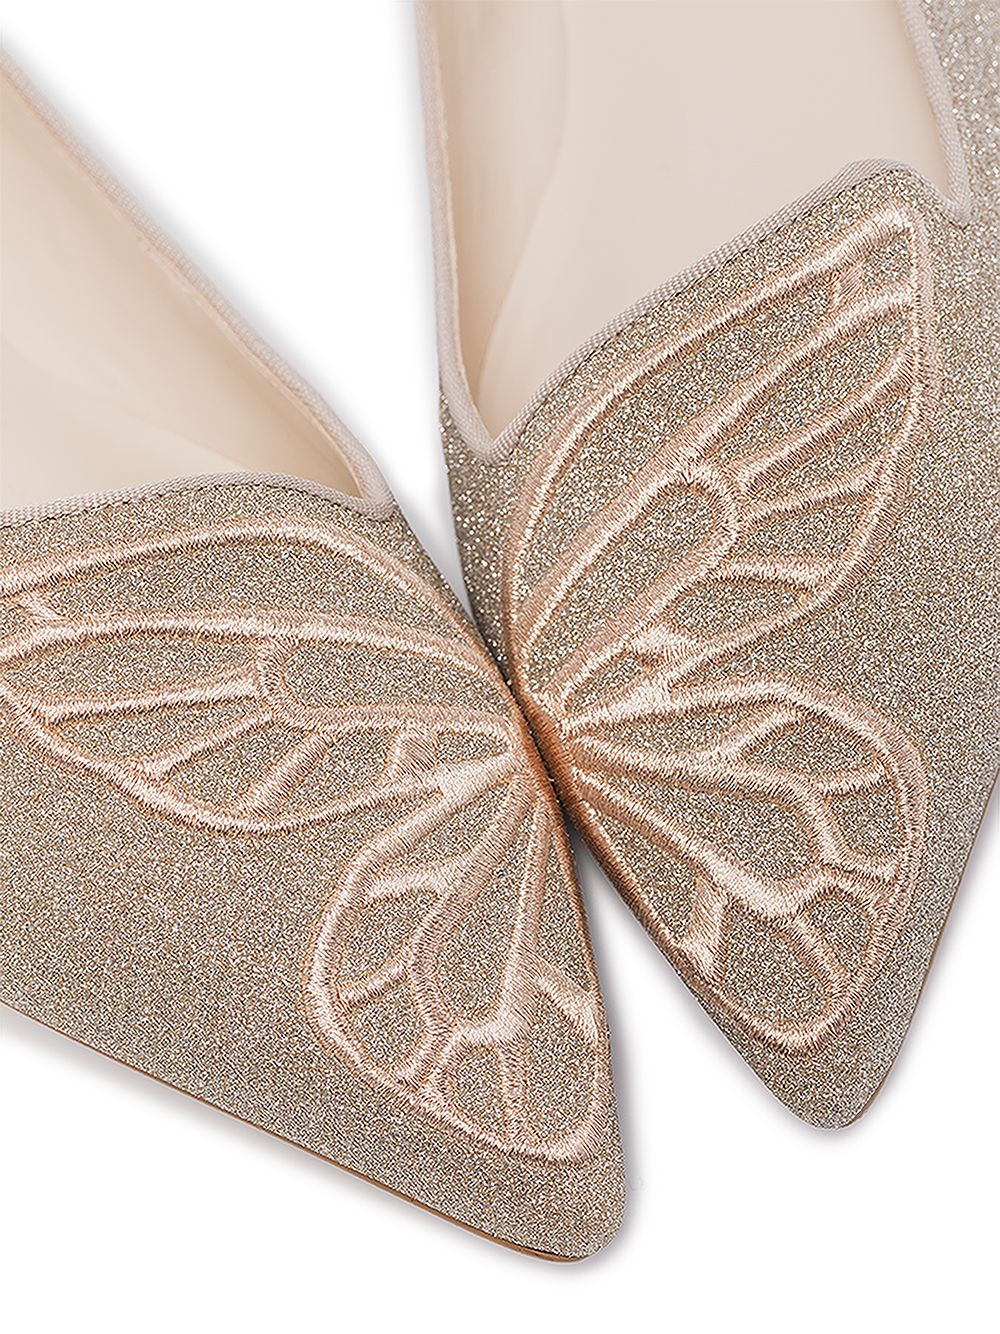 фото Sophia webster туфли-лодочки с вышитой бабочкой